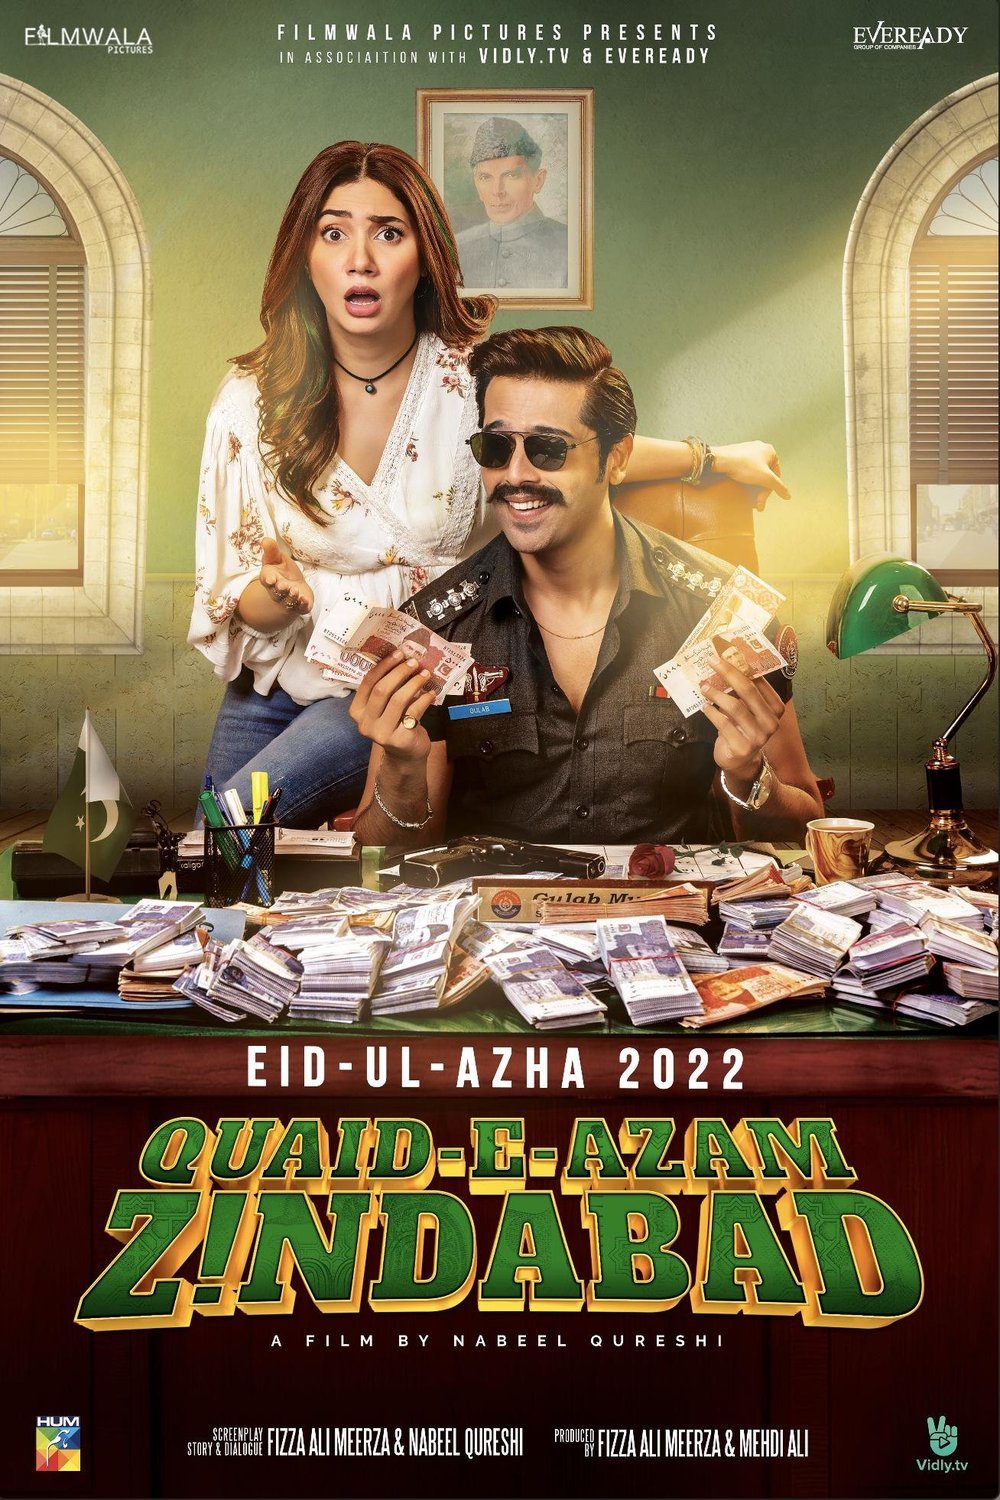 Urdu poster of the movie Quaid-e-Azam Zindabad